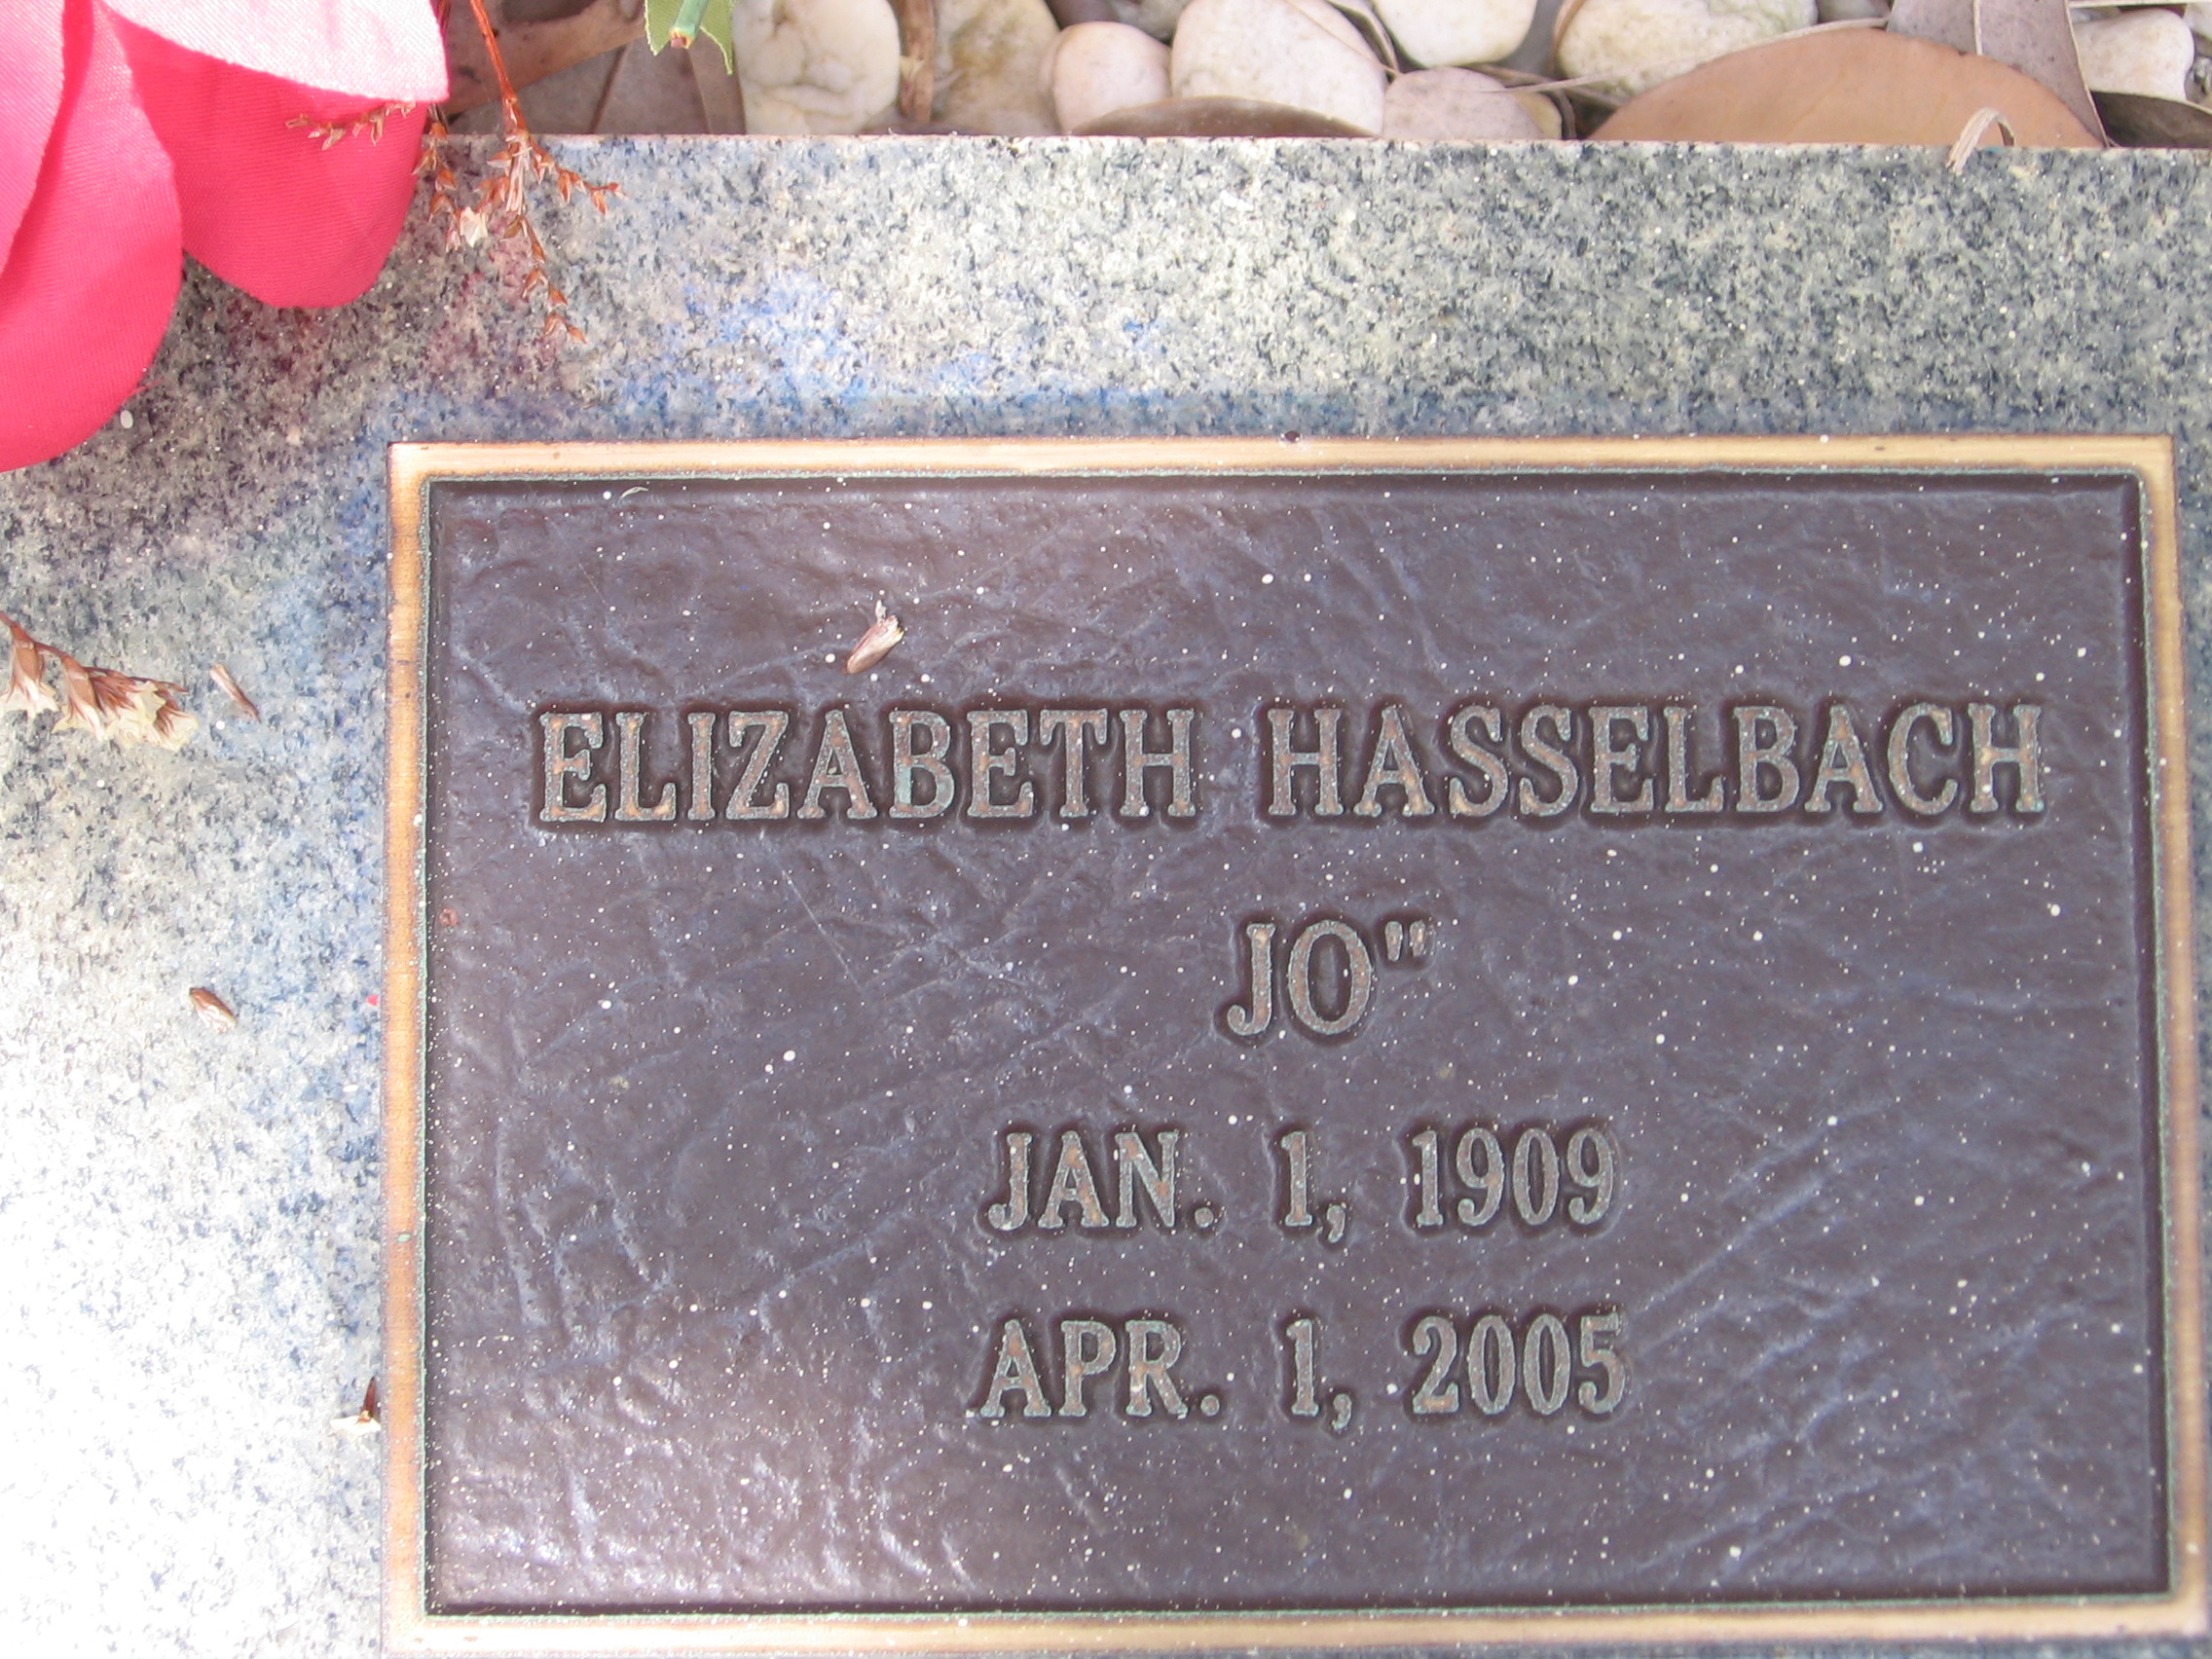 Elizabeth "Jo" Hasselbach